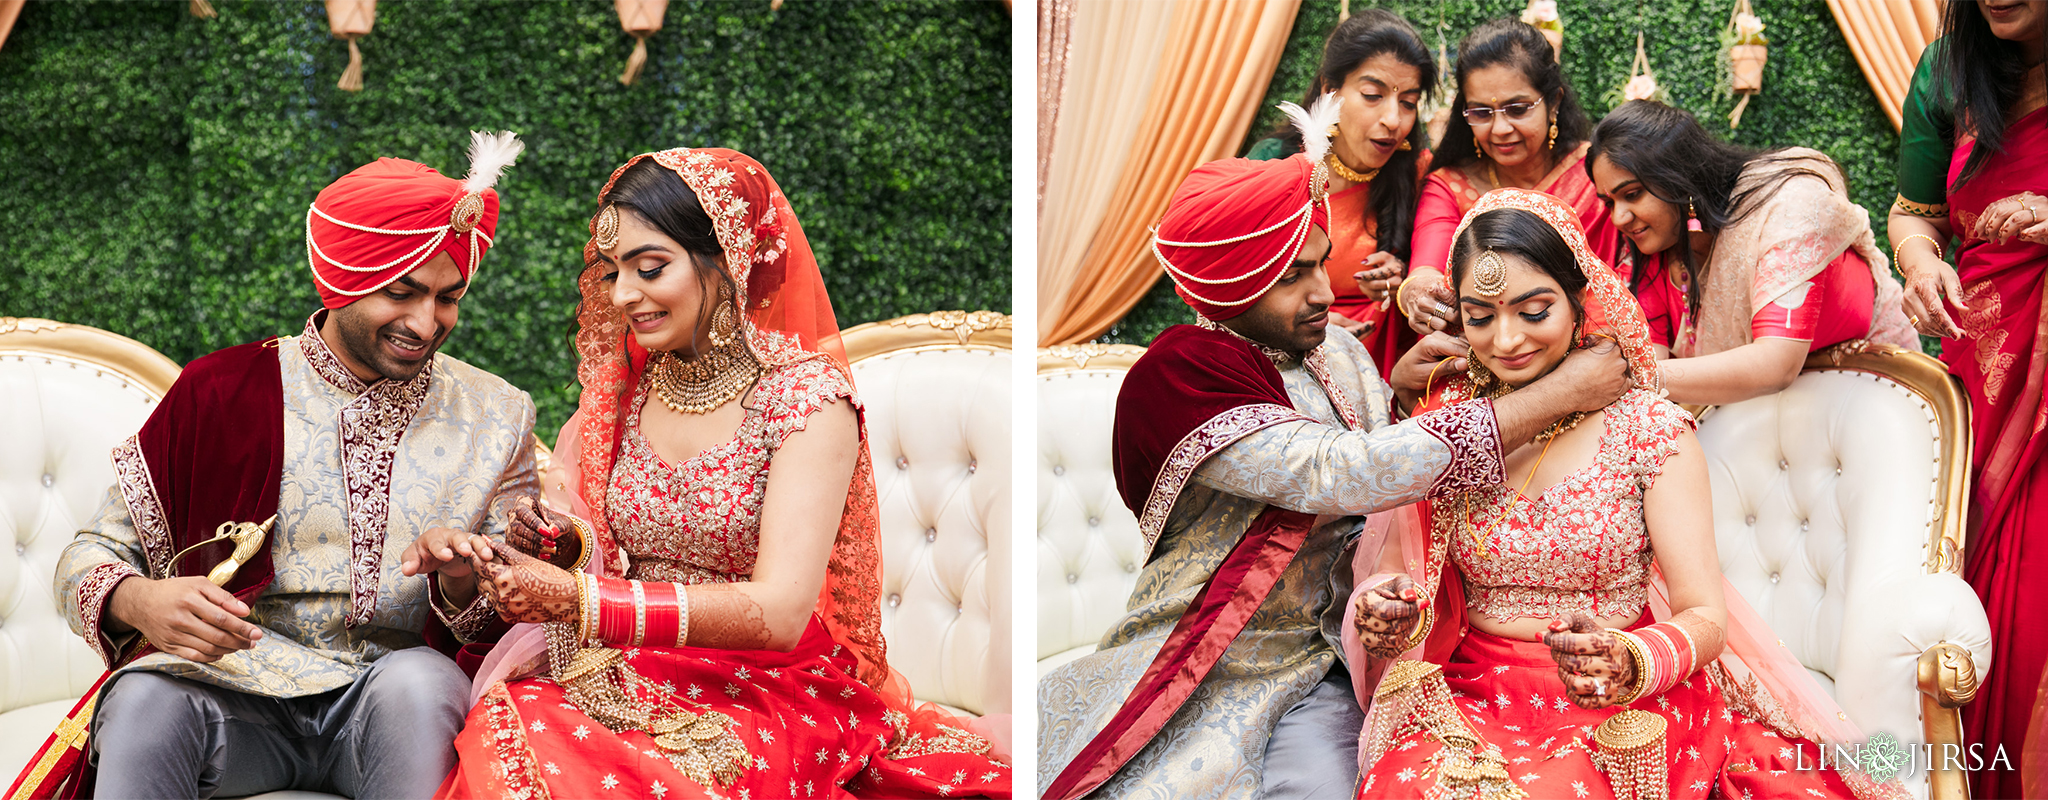 19 Sikh Gurdwara San Jose Punjabi Indian Wedding Photography